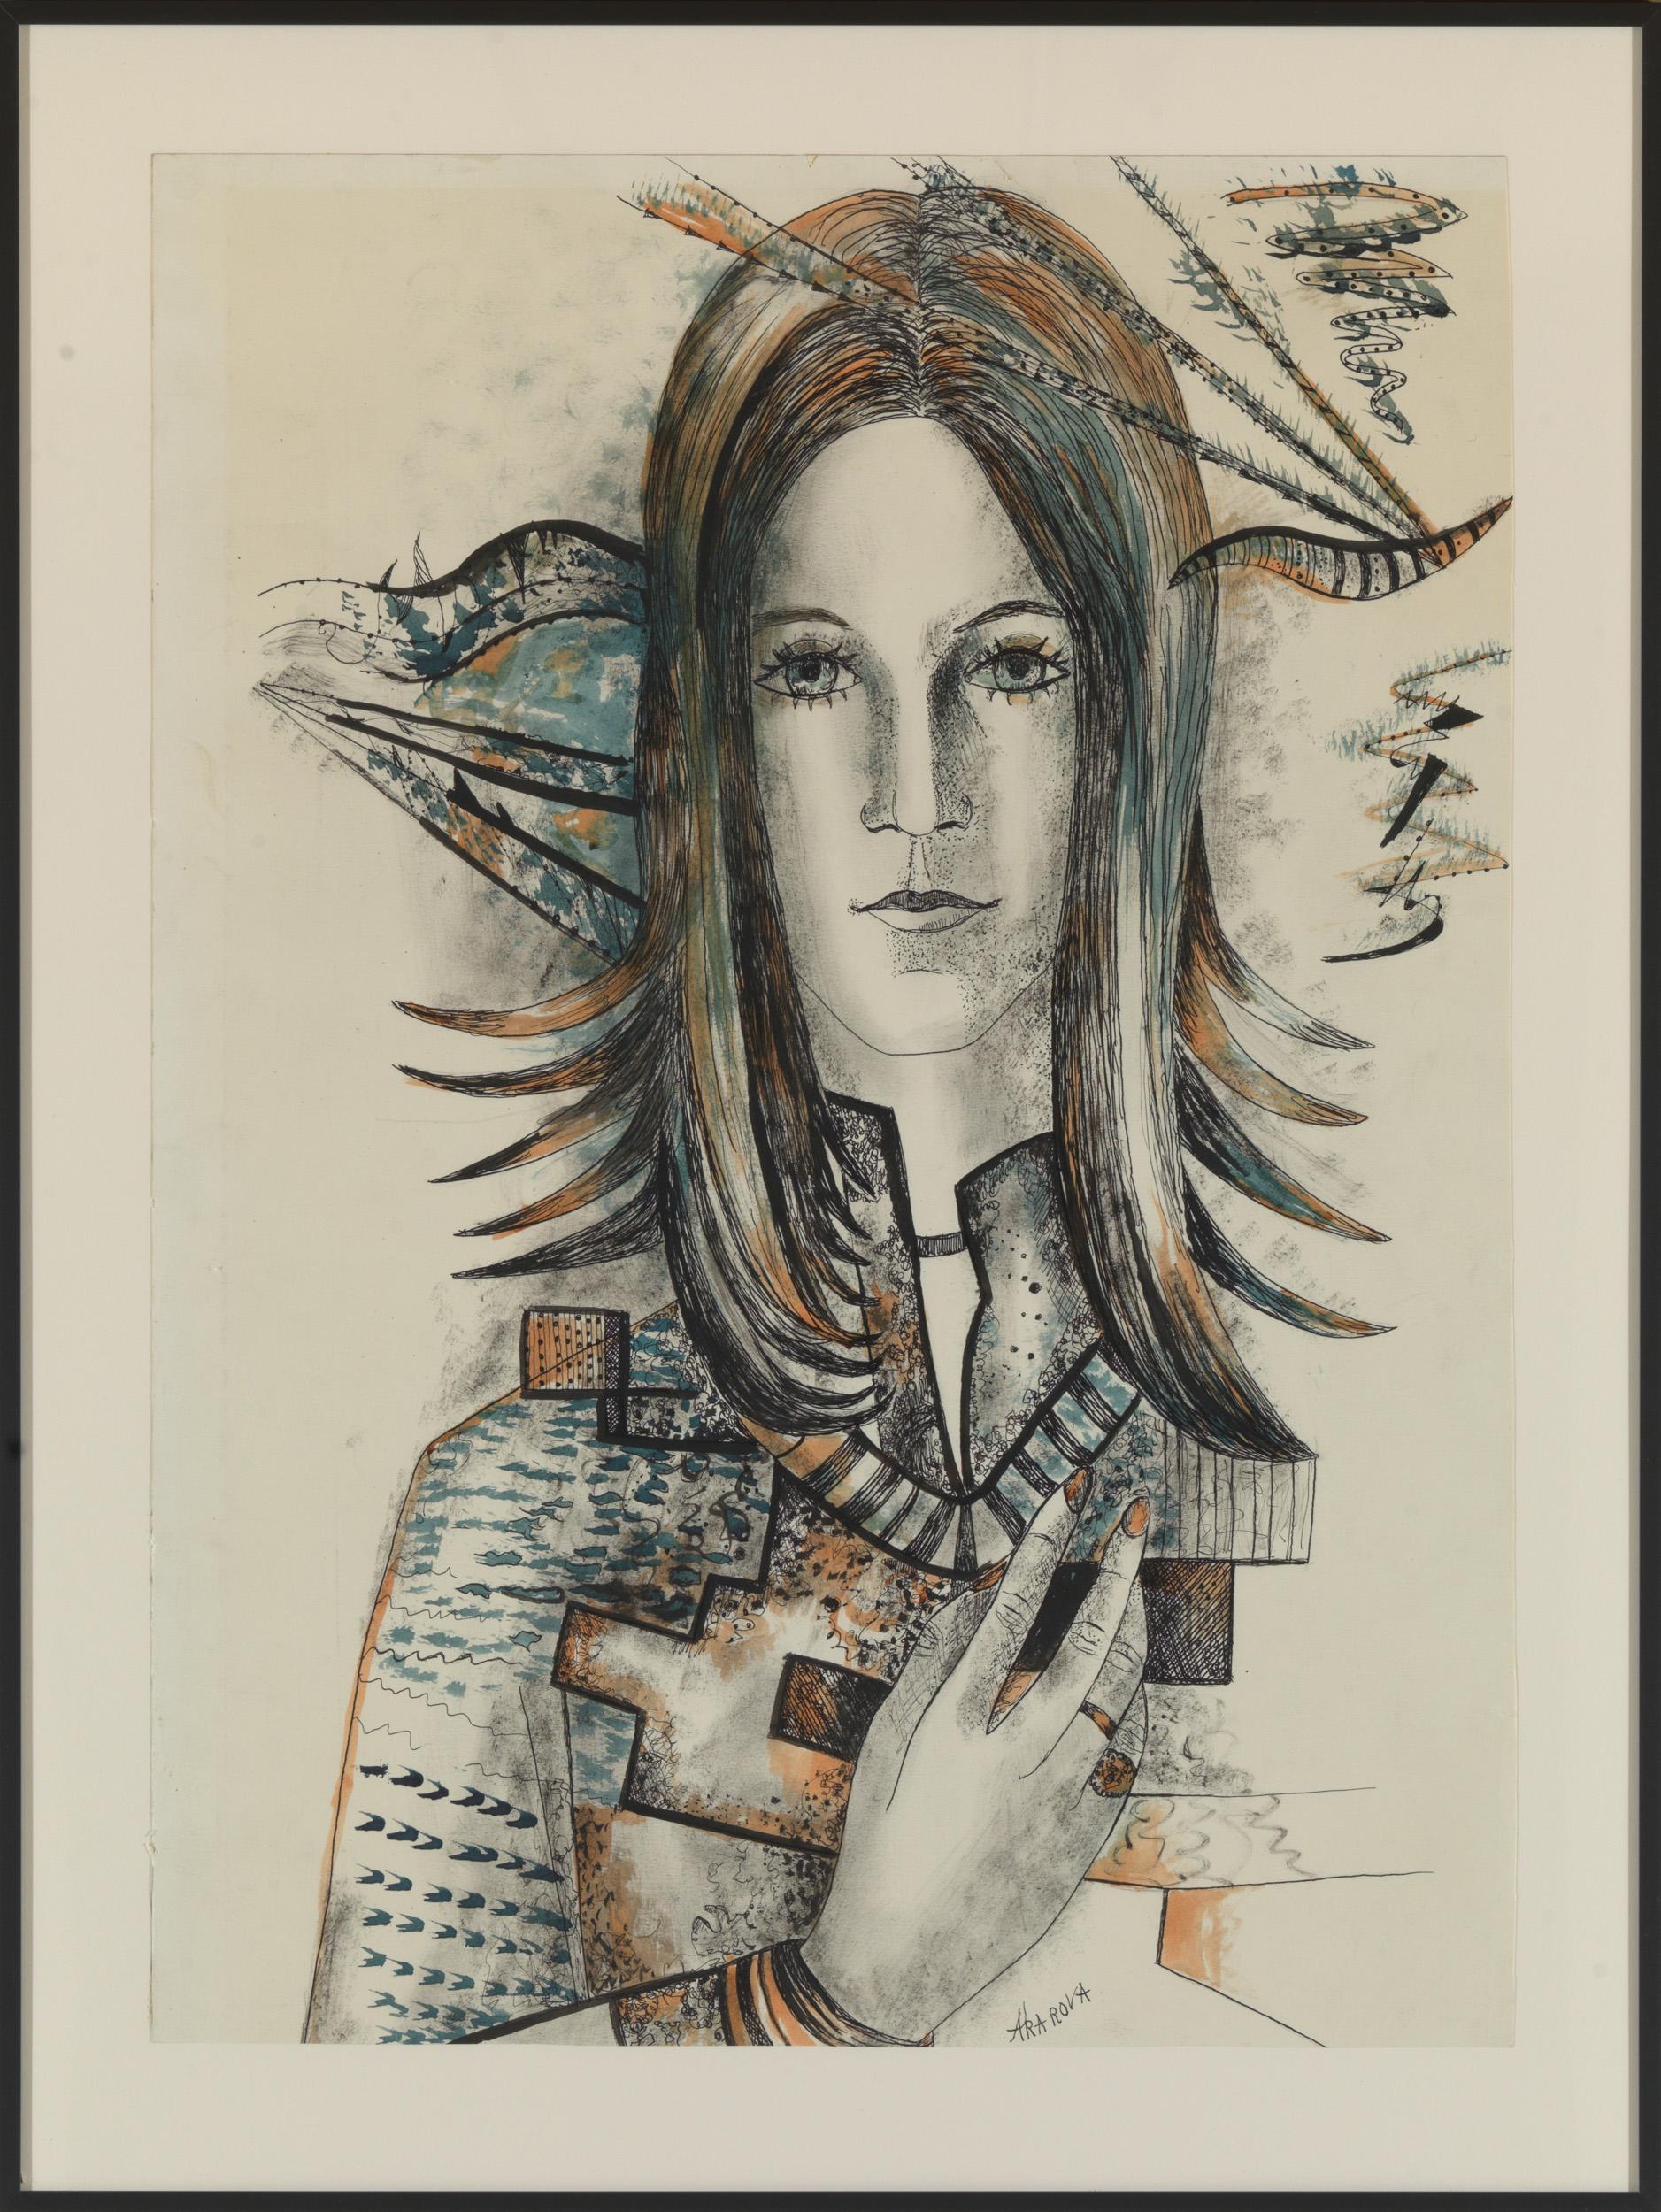 Akarova Marguerite (Sint-Joost-Ten-Node, 1904 - Elsene, 1999), Self-Portrait, Zeichnung auf Papier, 61 x 81cm, gerahmt und signiert

Marguerite Acarin (30. März 1904, in Saint-Josse-ten-Noode - 24. Juni 1999, in Ixelles) war eine belgische Tänzerin,